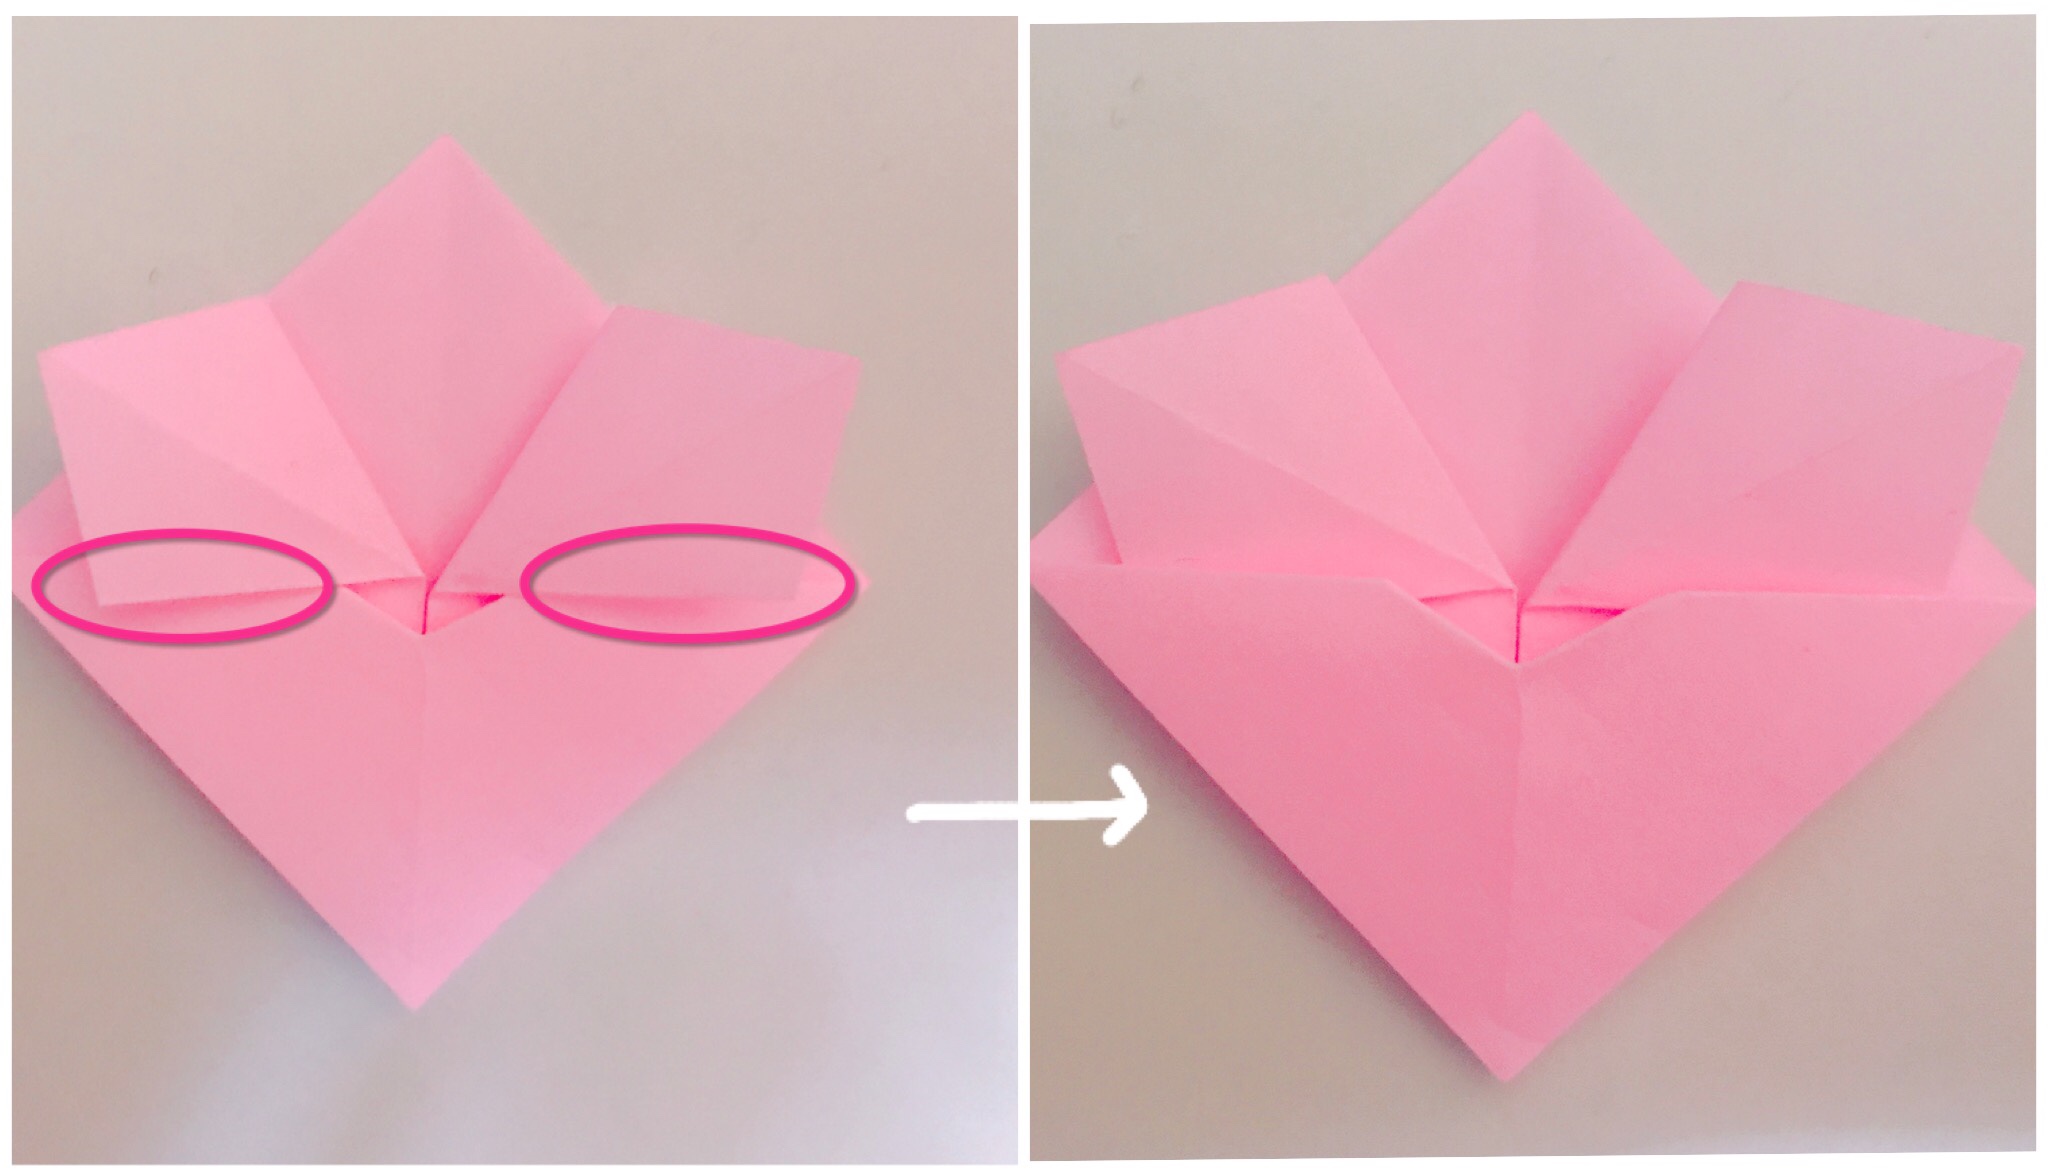 折り紙で桃の花 折り方は簡単だよ お雛様の飾りにもおすすめ Kodomoto